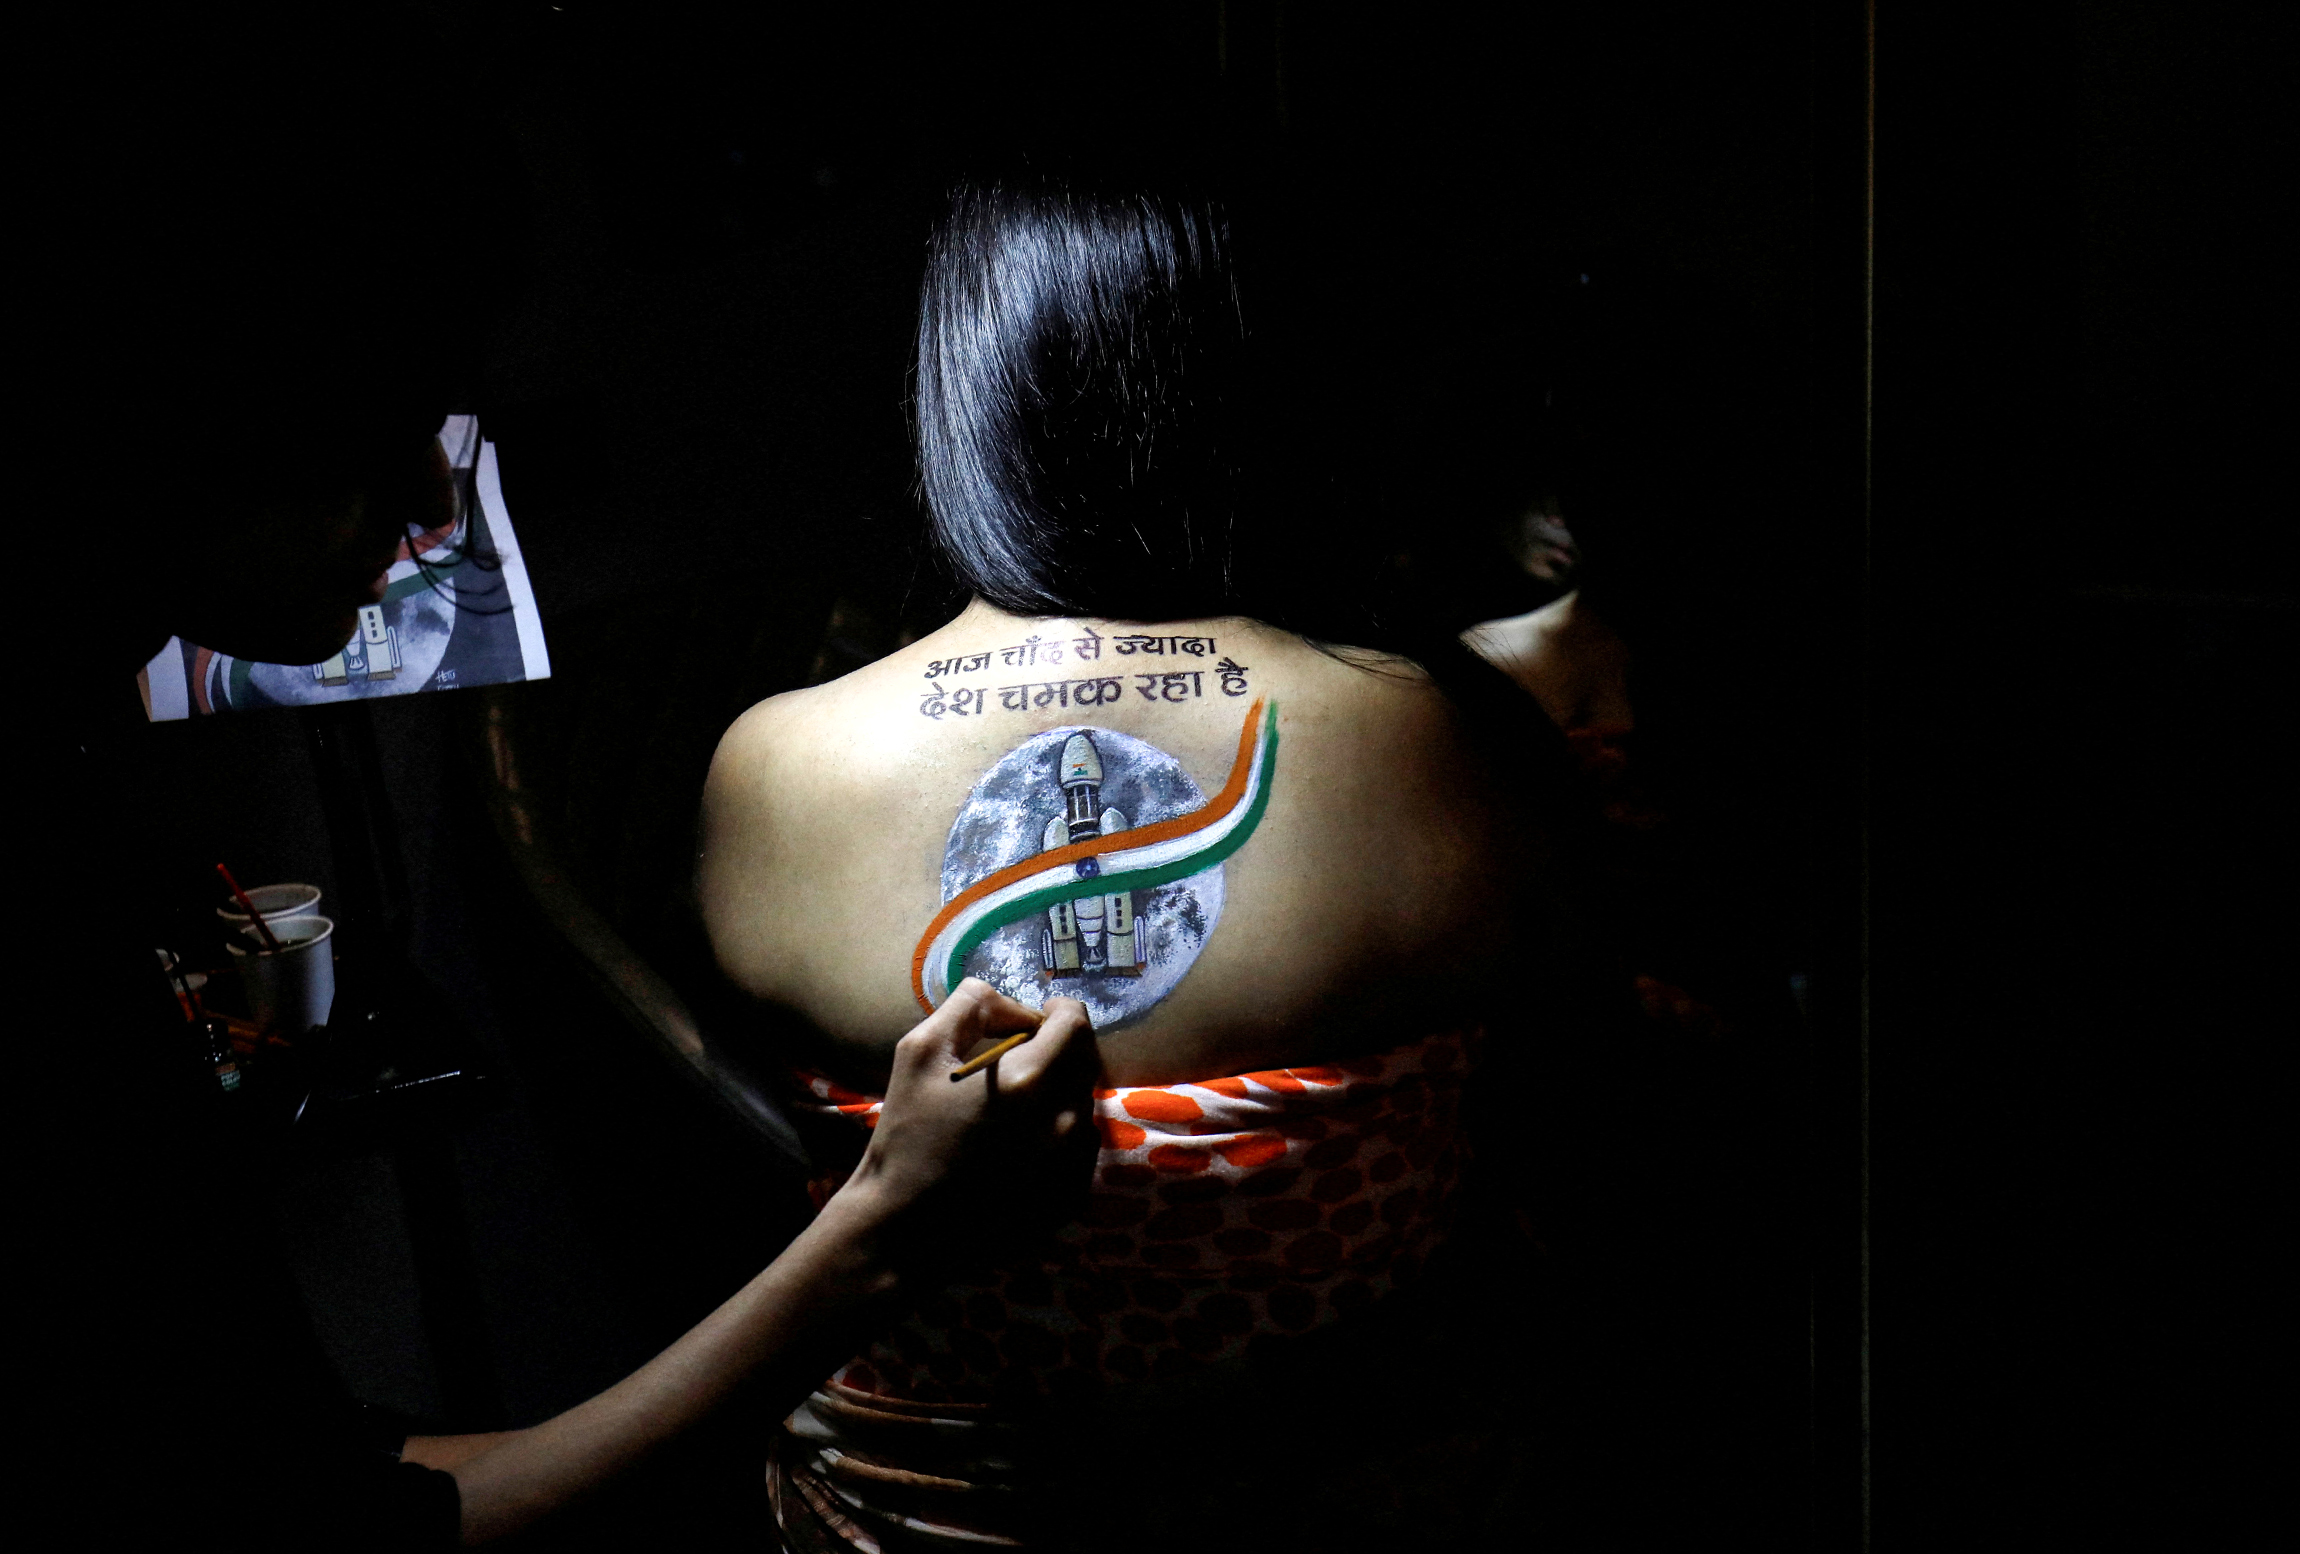 Художник 24 августа заканчивает эскиз татуировки с индийским космическим кораблем &laquo;Чандраяан-3&raquo;&nbsp;в честь&nbsp;его посадки на Луну, в тату-студии в Ахмадабаде, Индия. Слова татуировки гласят: &laquo;Сегодня страна сияет ярче Луны&raquo;

23 августа Индия посадила на Луну станцию &laquo;Чандраян-3&raquo;. Таким образом, Индия стала четвертой страной мира, которой удалось осуществить мягкую посадку аппарата на Луне&nbsp;&mdash; после СССР, США и Китая. Планируемая экспедиция должна продолжить начатые станцией &laquo;Чандраян-1&raquo; поиски замерзшей воды&nbsp;&mdash; в 2008 году этот аппарат обнаружил доказательства наличия воды на Луне.